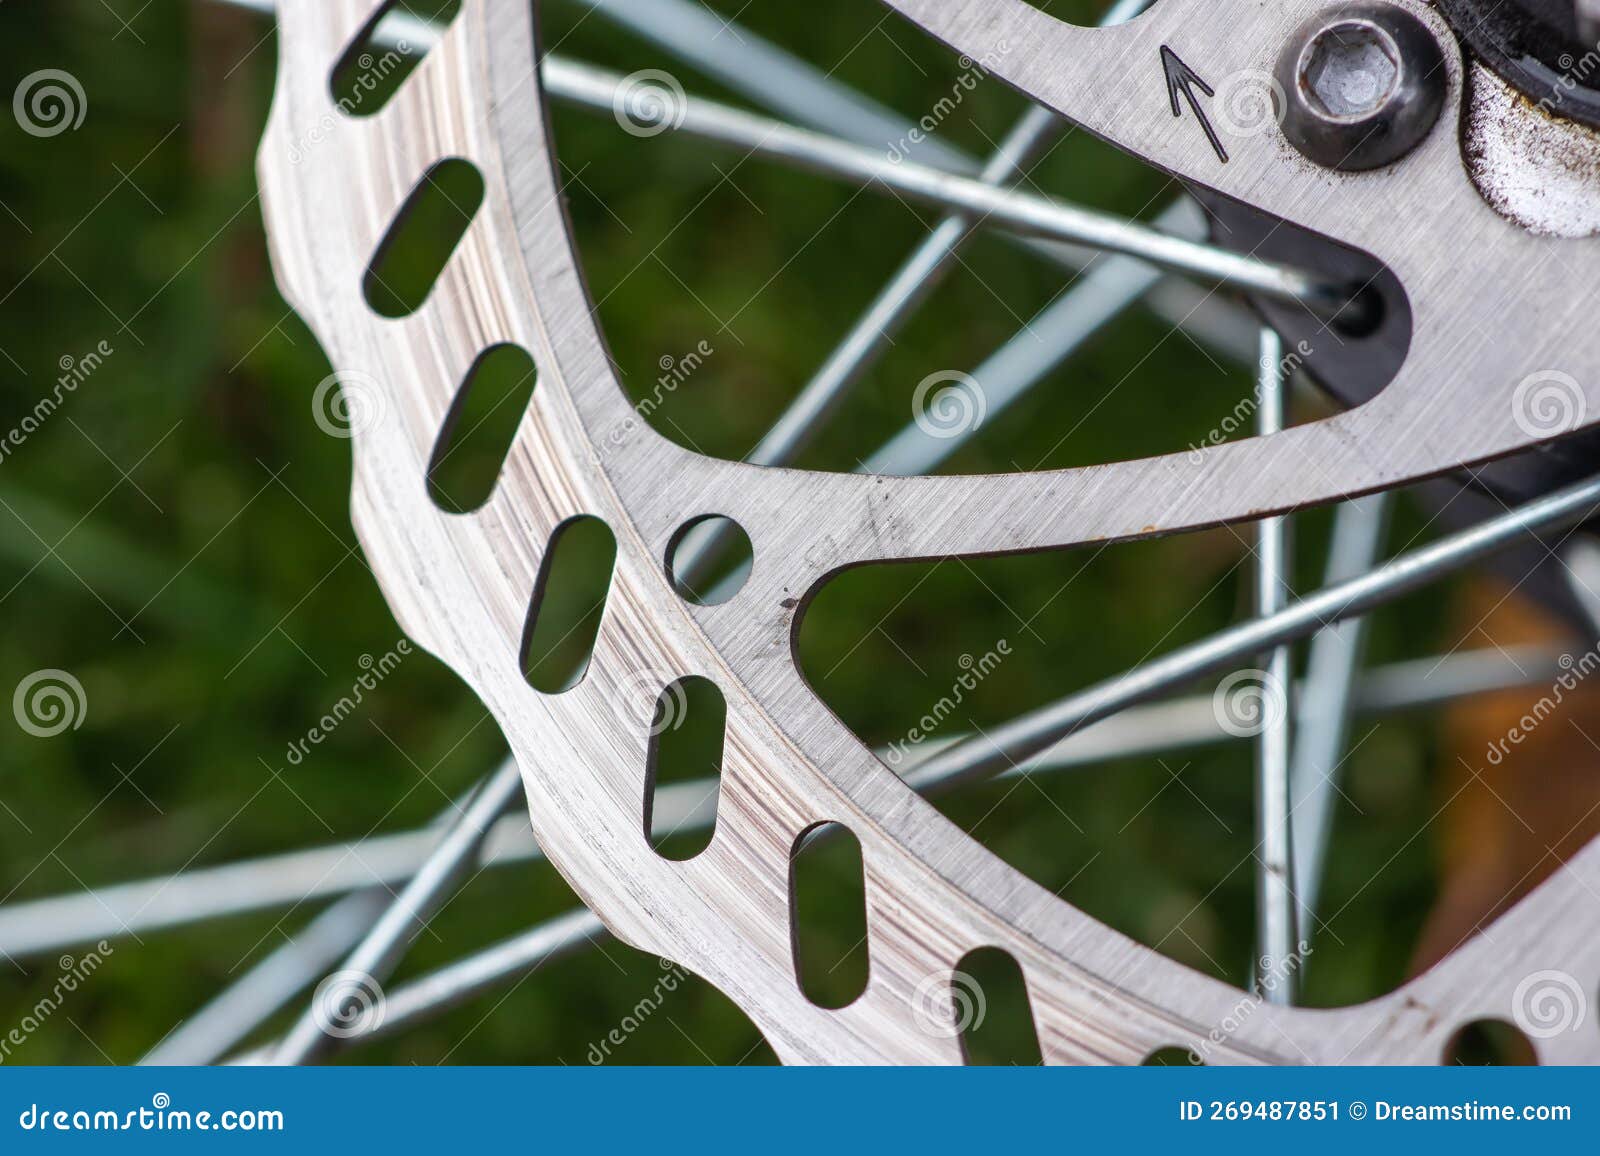 Rotor De Freno De De Bicicleta En El Foco. Detalles Metálicos Del Concepto De de archivo - Imagen de ciclo, equipo: 269487851